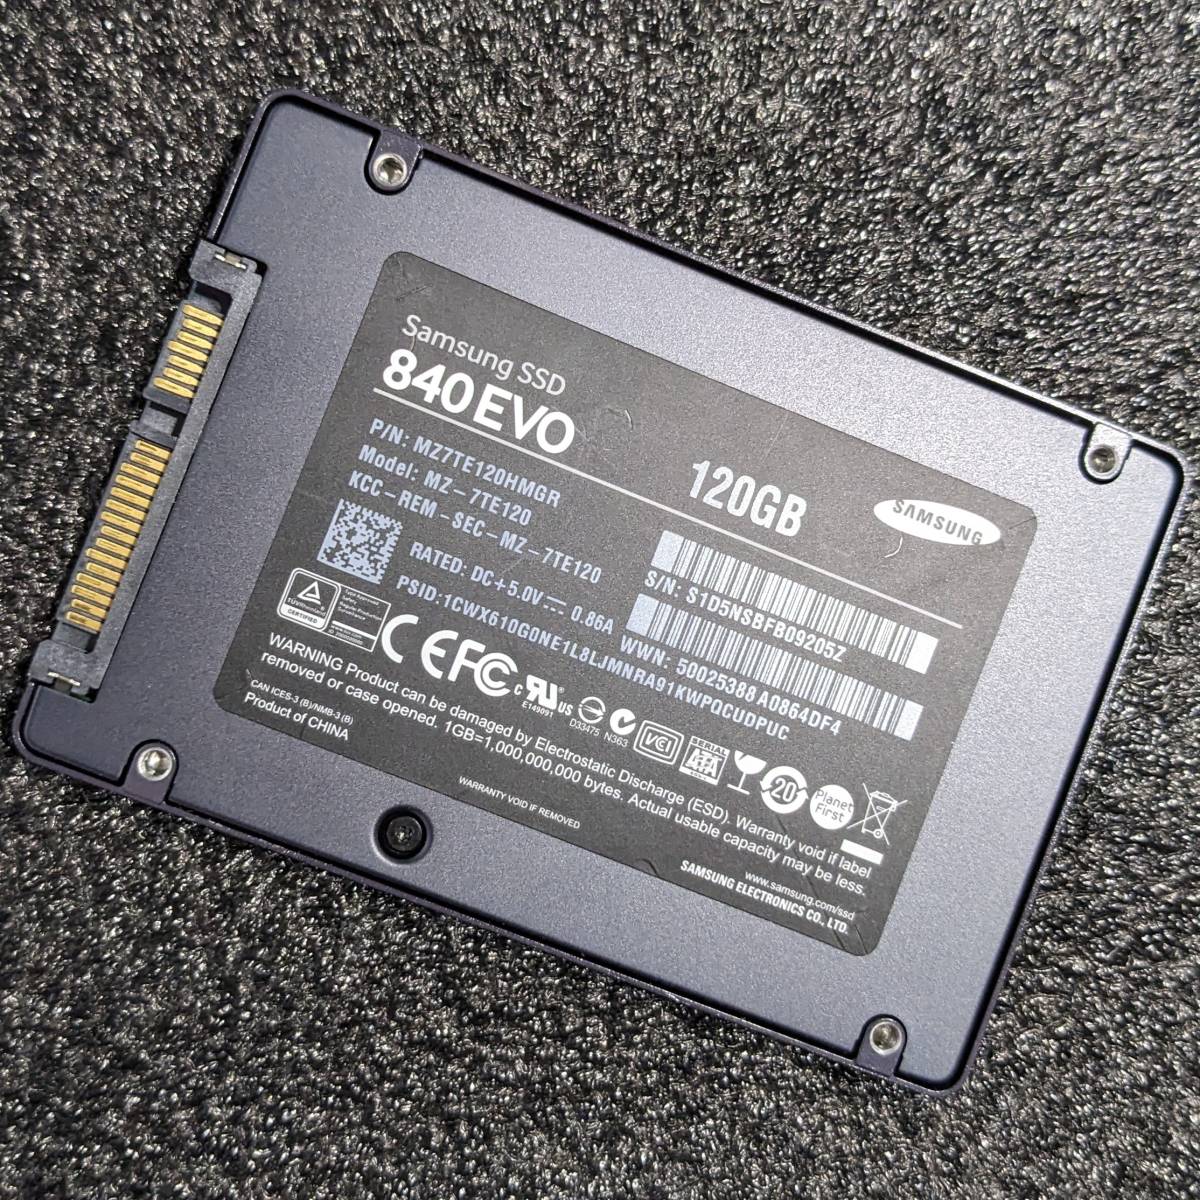 【中古】SAMSUNG 840 EVO 120GB [2.5インチ SATA 7mm厚 TLC]